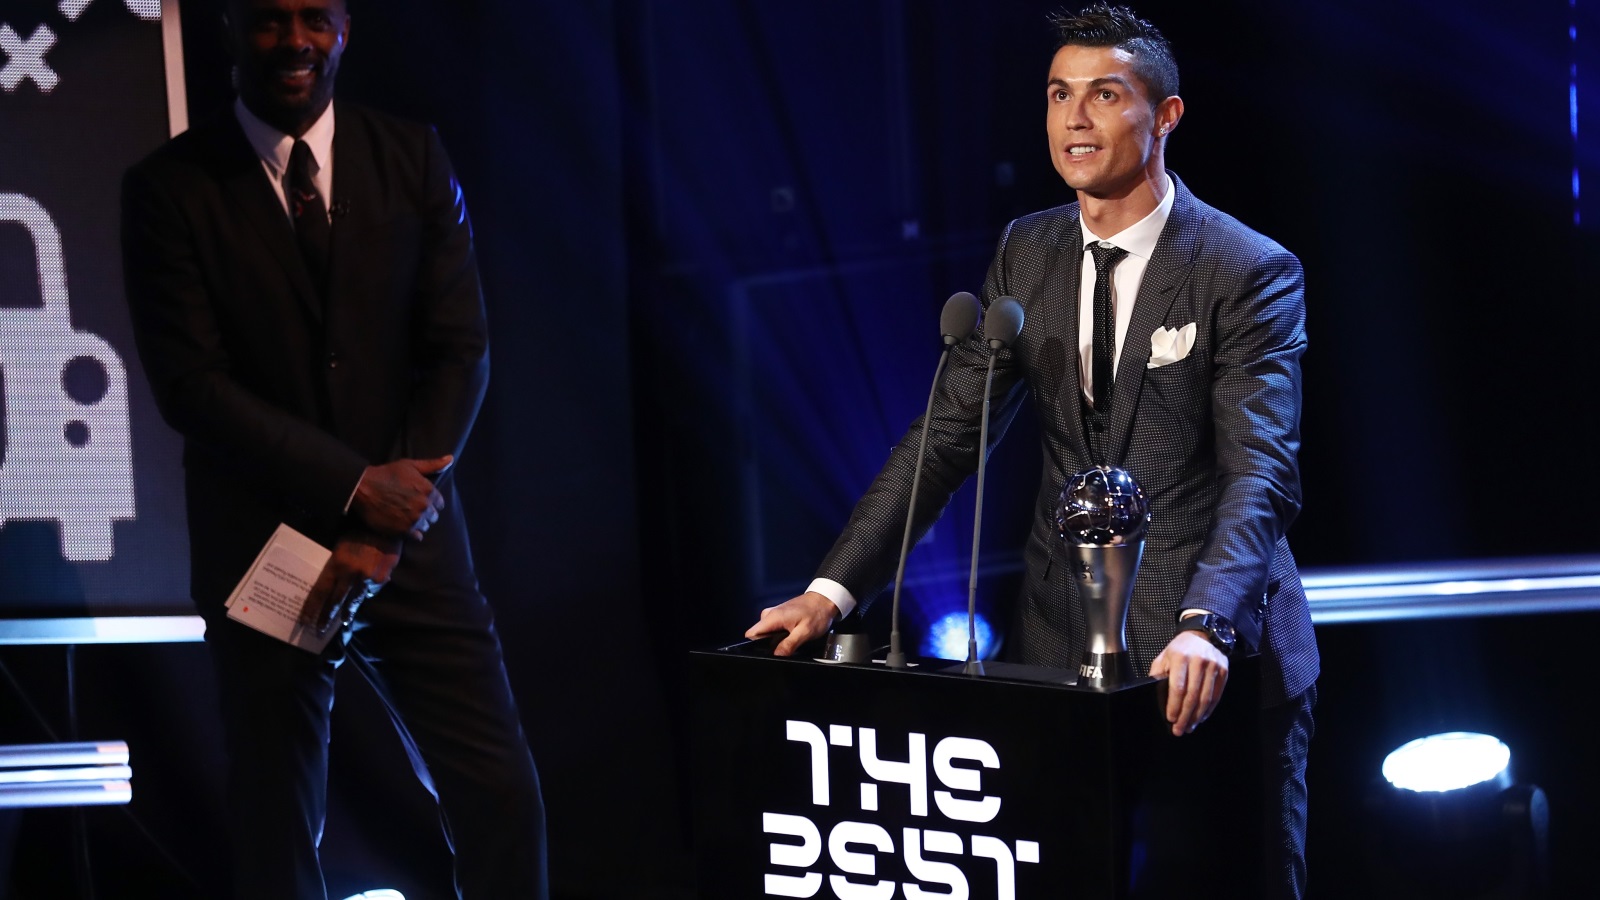 رونالدو أحرز جائزة أفضل لاعب في العالم خمس مرات (غيتي)